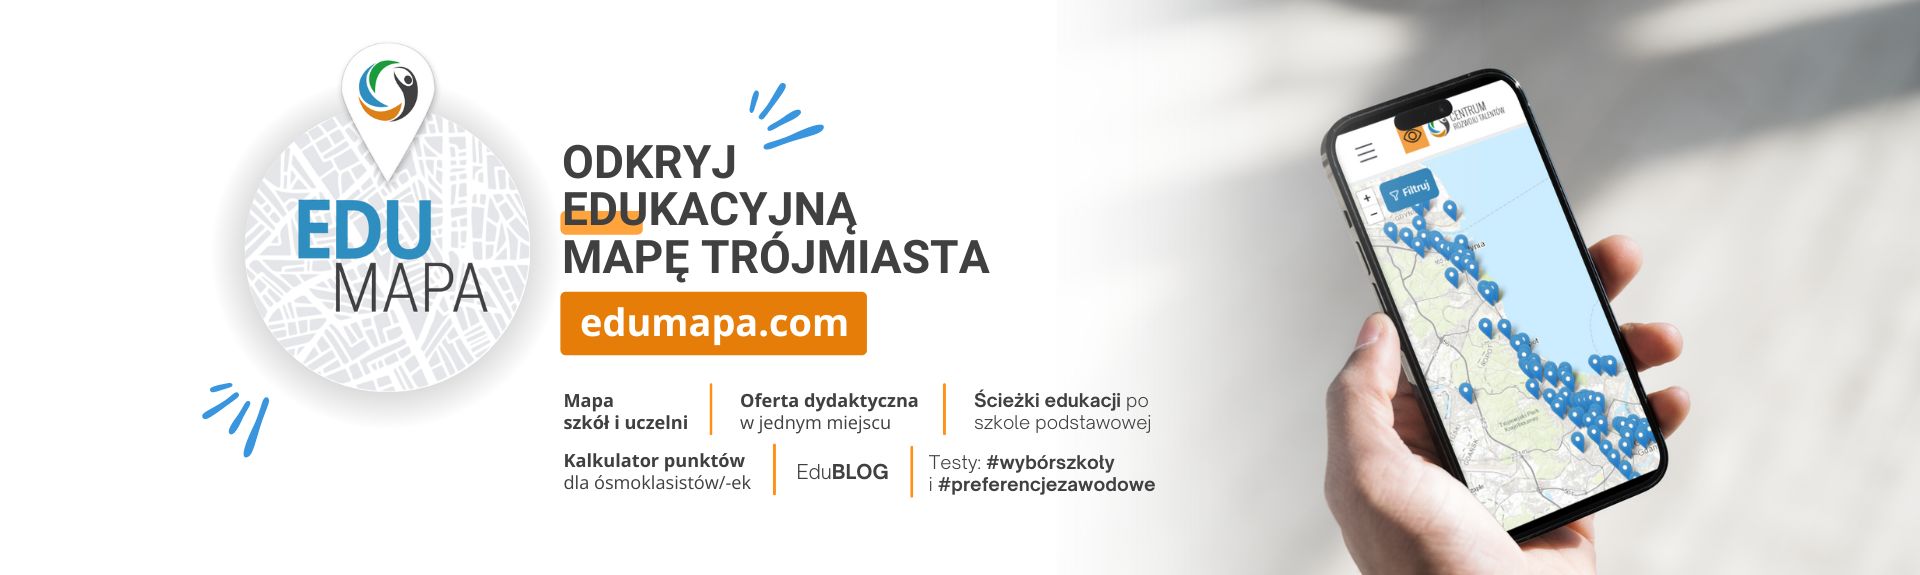 Edumapa.com - odkryj edukacyjną mapę Trójmiasta i poznaj swoje preferencje!